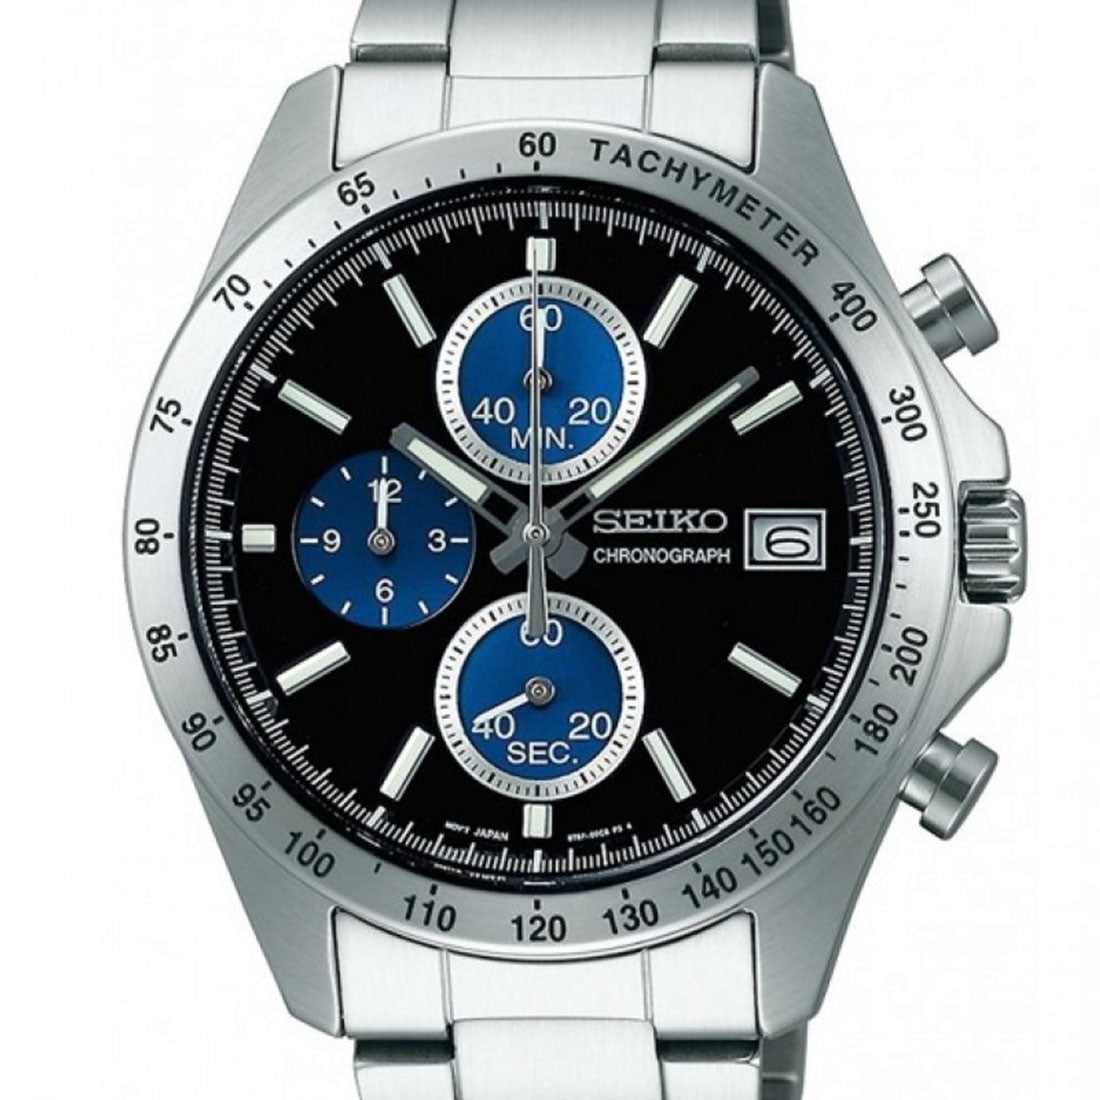 Seiko Spirit SBTR003 JDM Selection Black Blue Dial Chronograph Quartz Stainless Steel Watch -Seiko